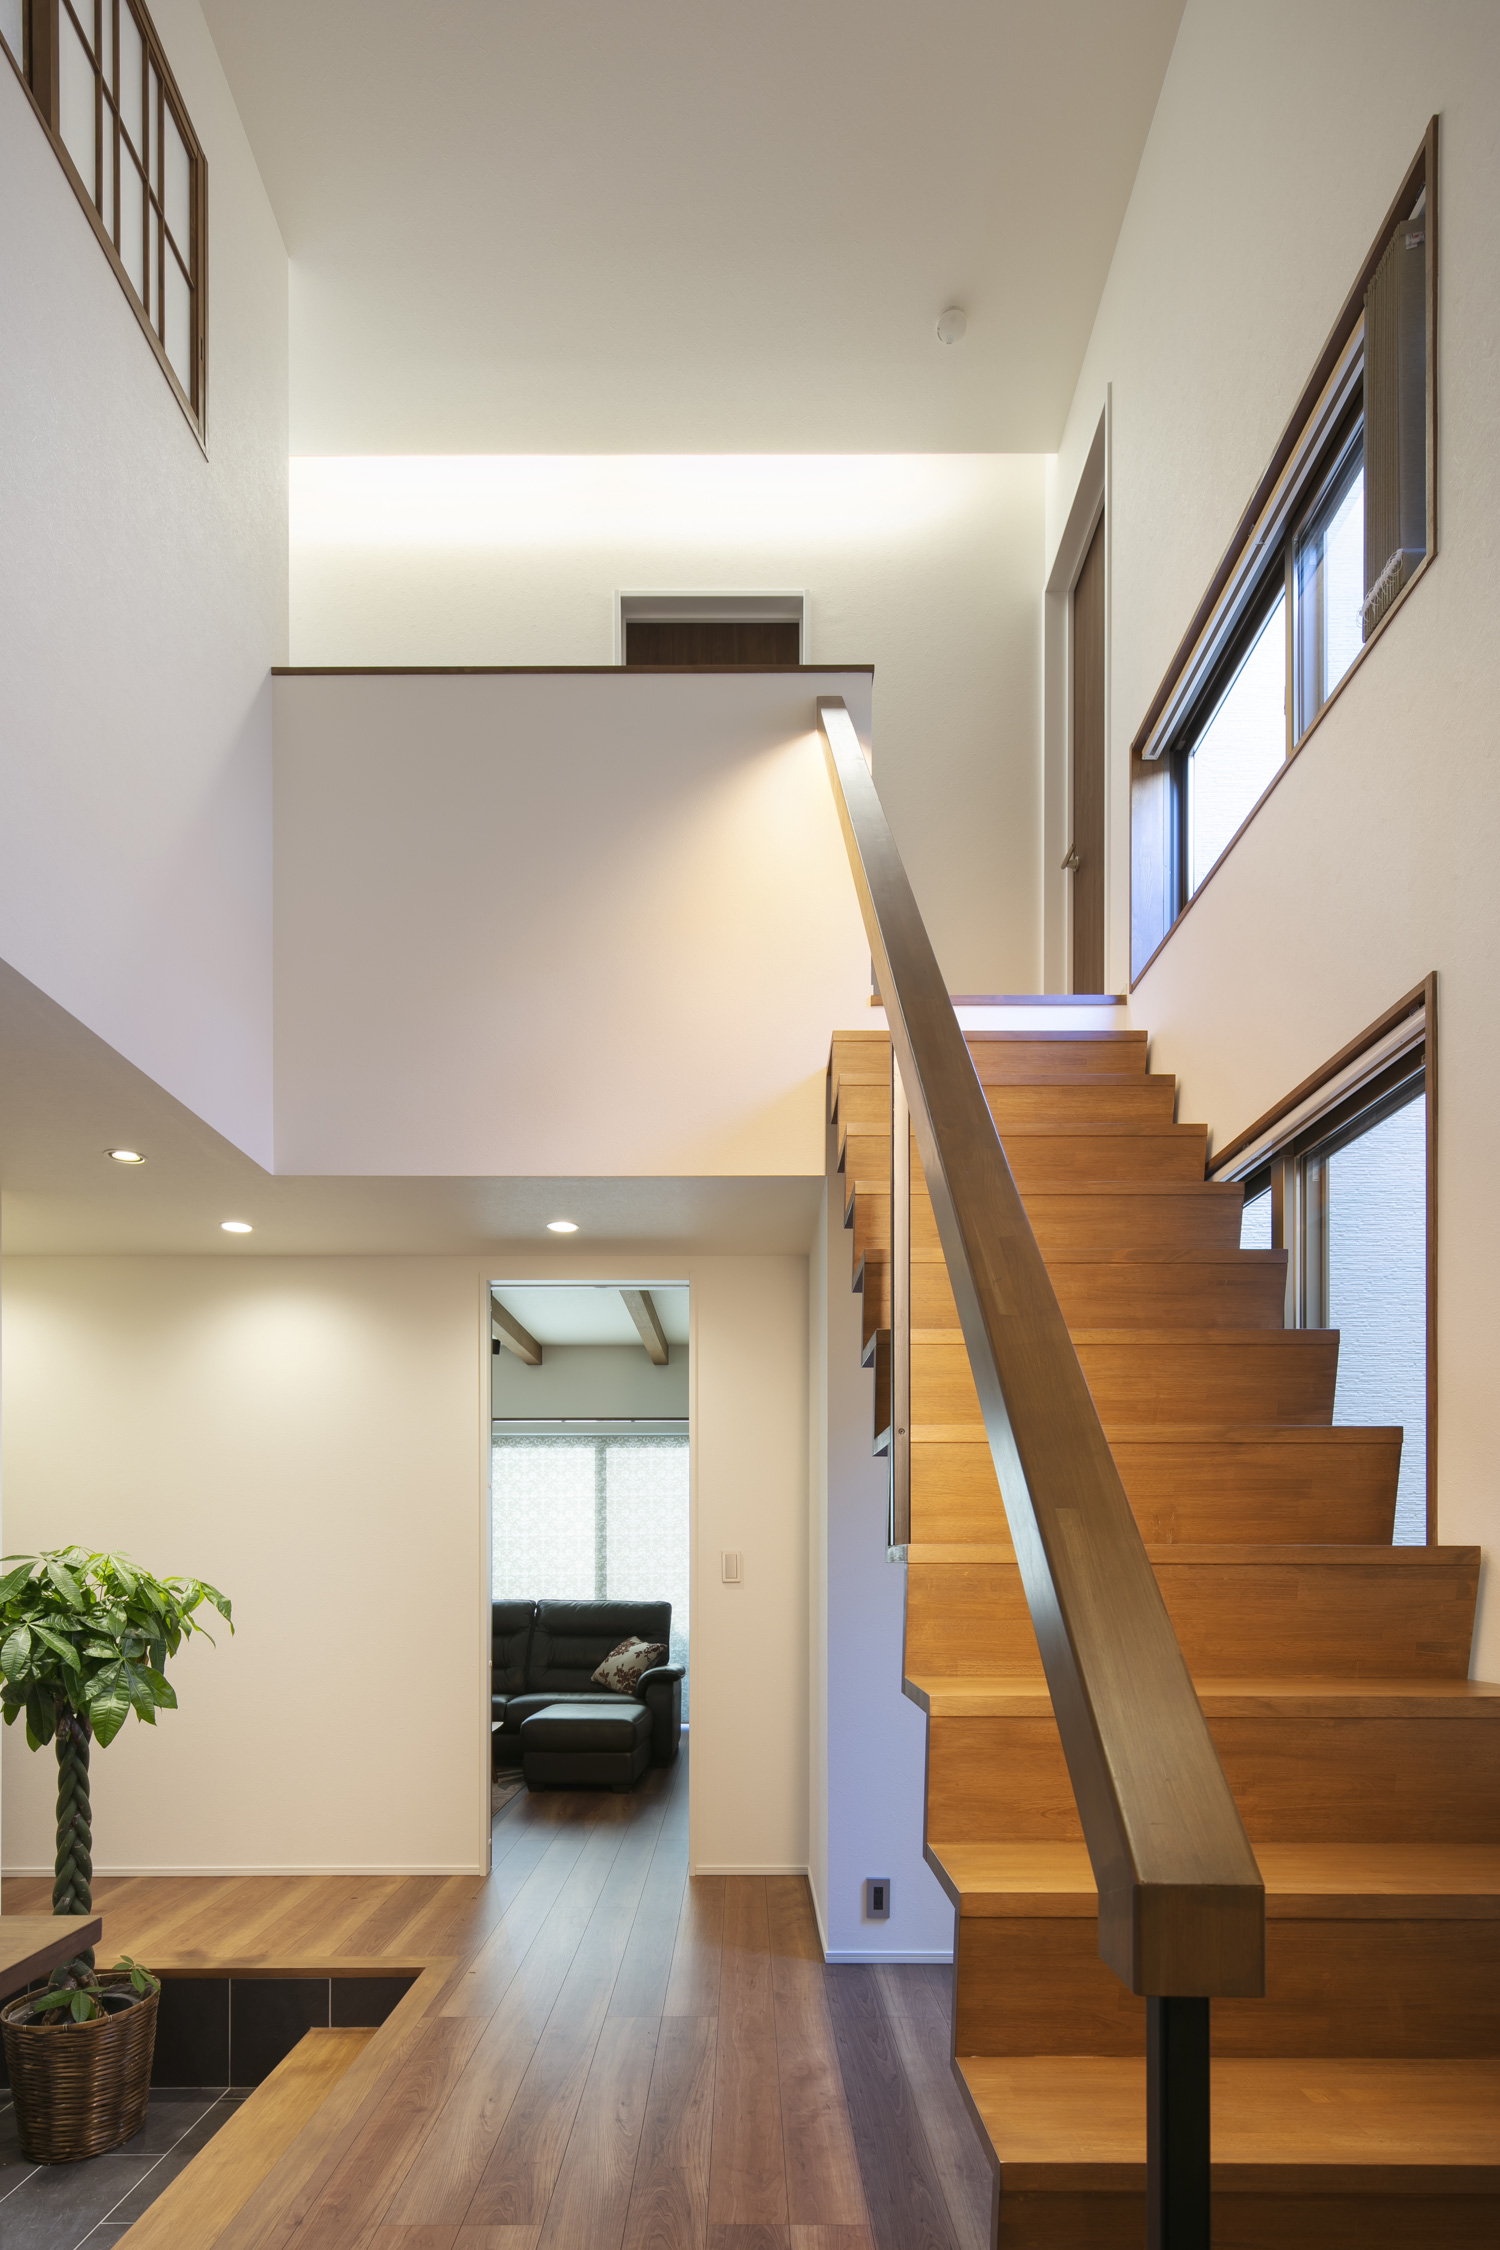 二階の天井の間接照明に照らされた、吹き抜けにある木製のスケルトン階段・デザイン住宅